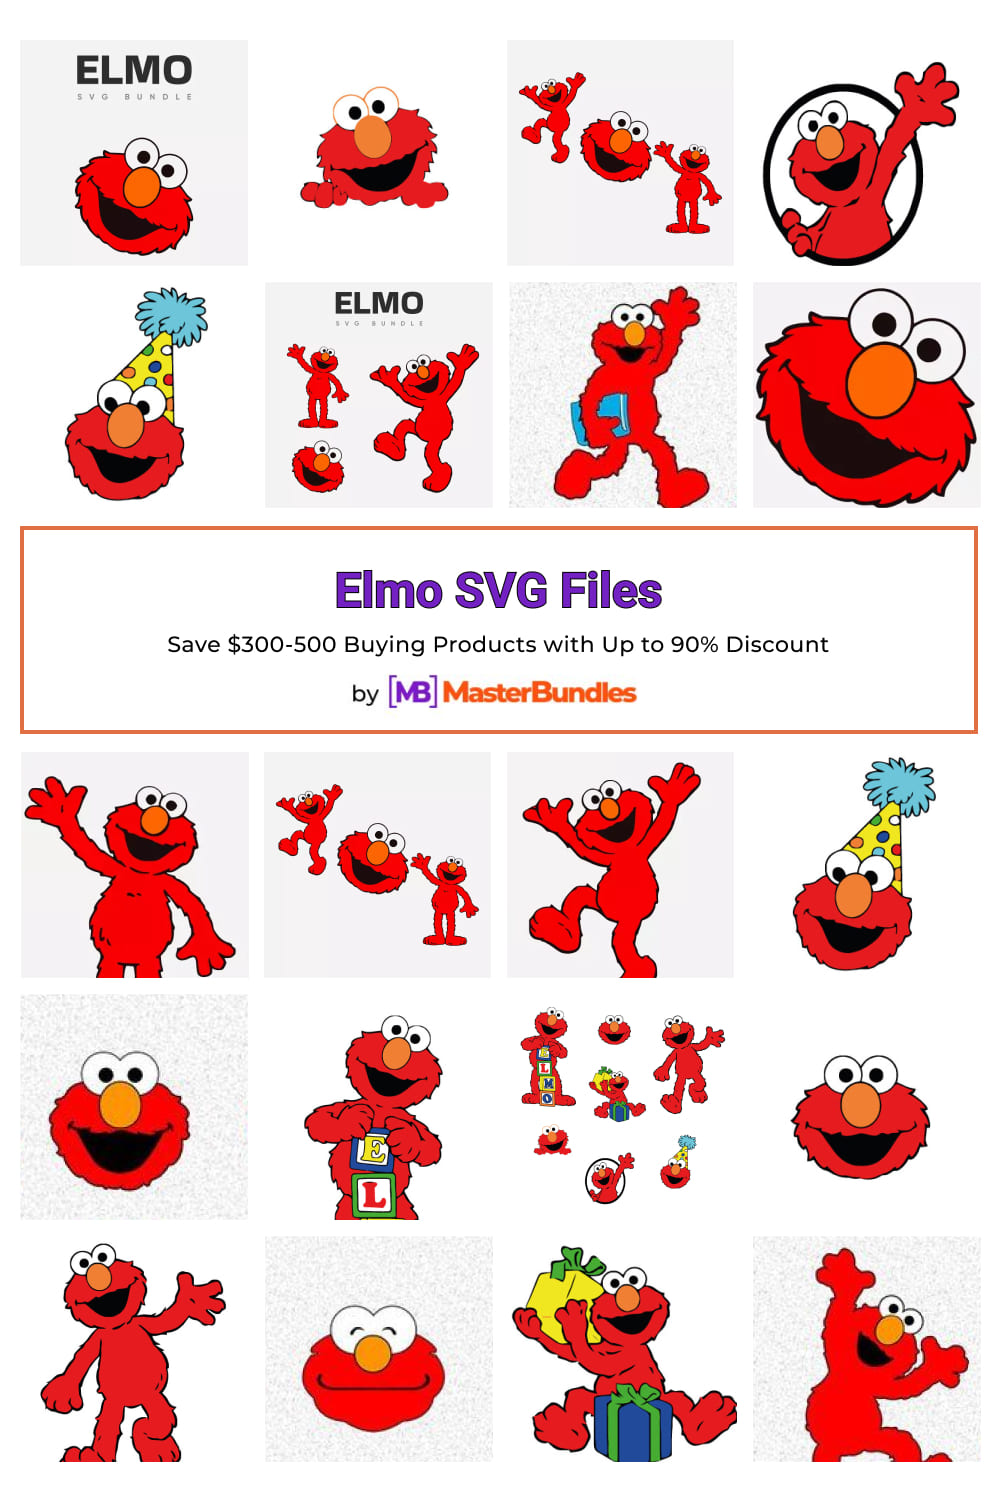 Elmo SVG Files for Pinterest.